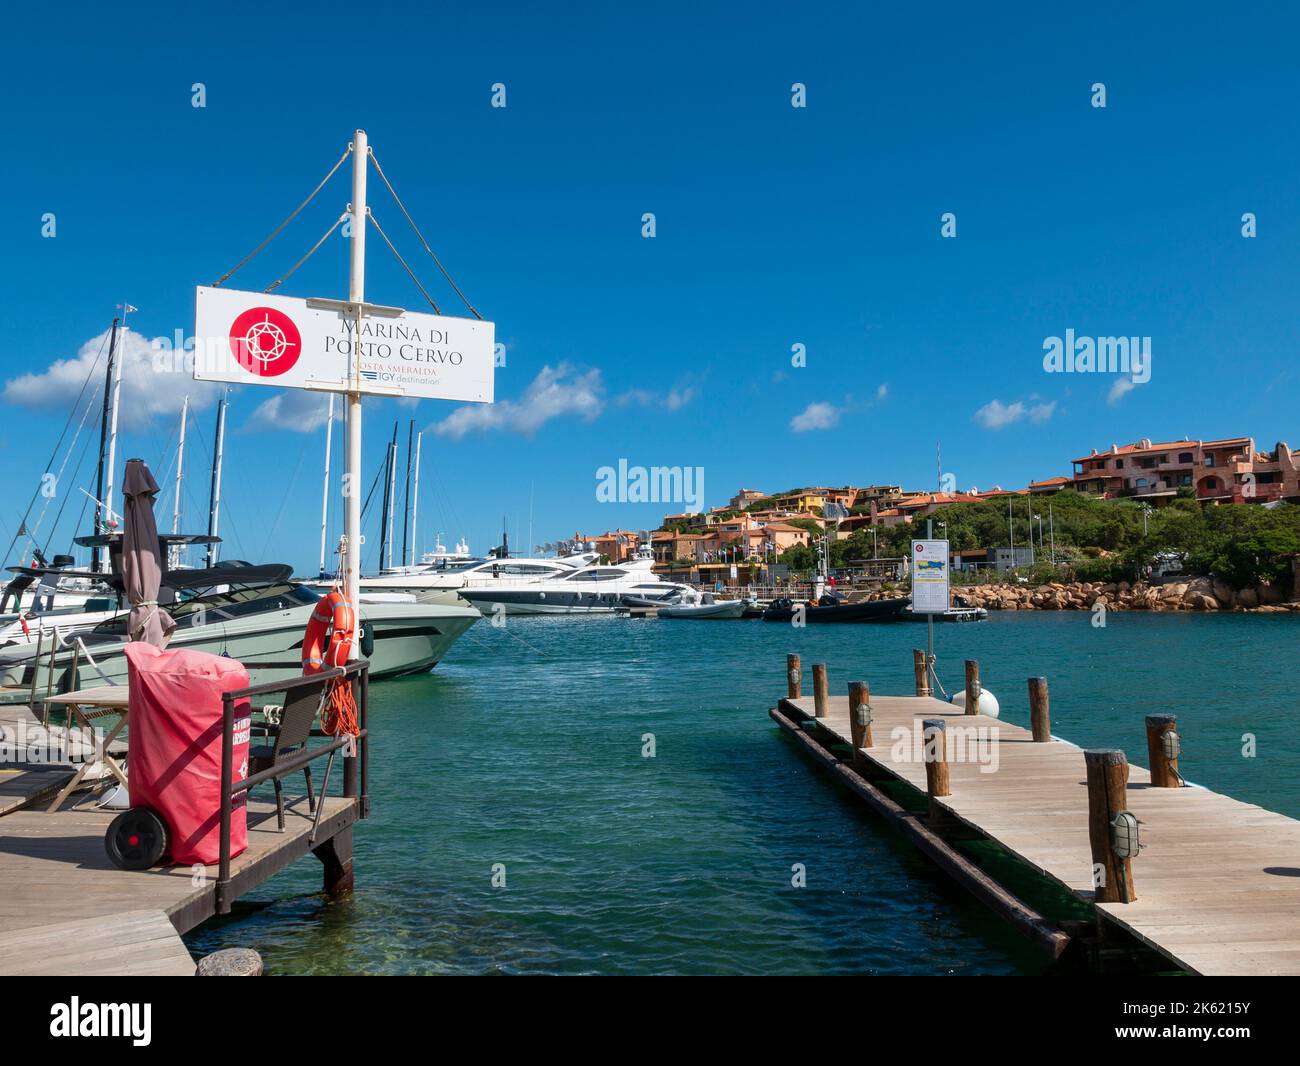 The marina, Porto Cervo, Costa Smeralda, Arzachena, Sardinia, Italy. Stock Photo